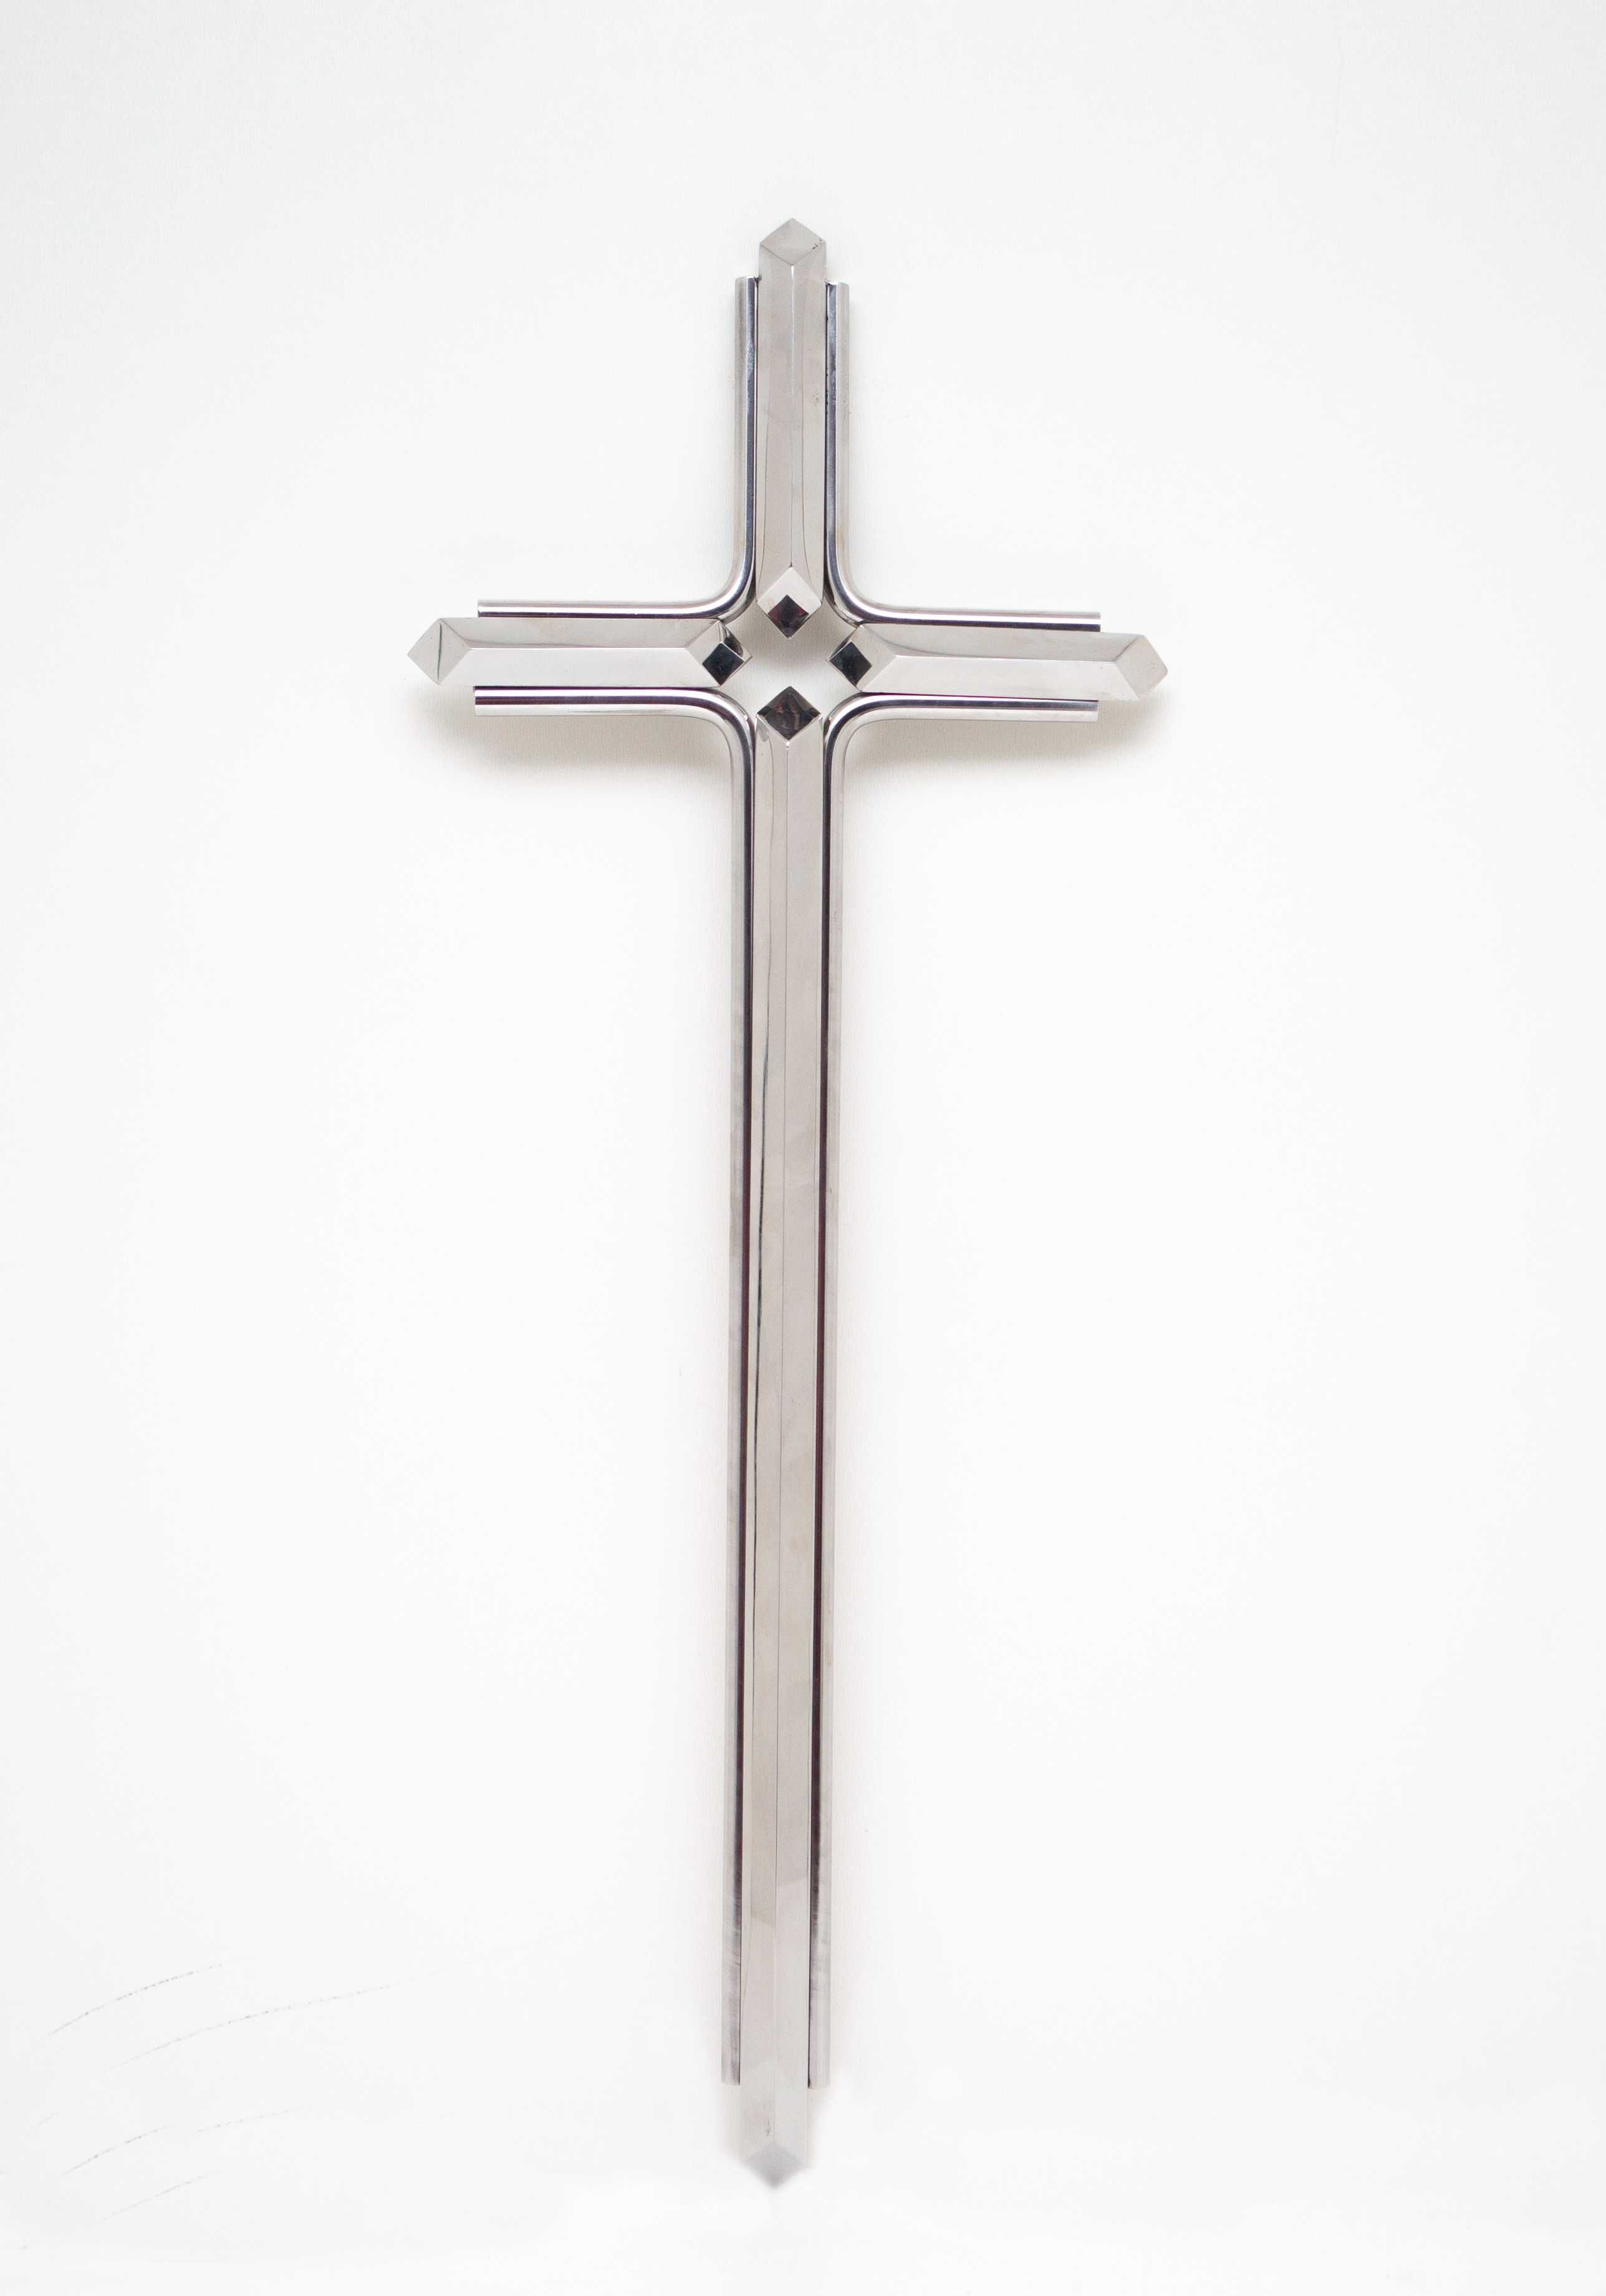 Krzyż na pomnik, nagrobek, krzyż nierdzewny,krzyż  metalowy,srebrny